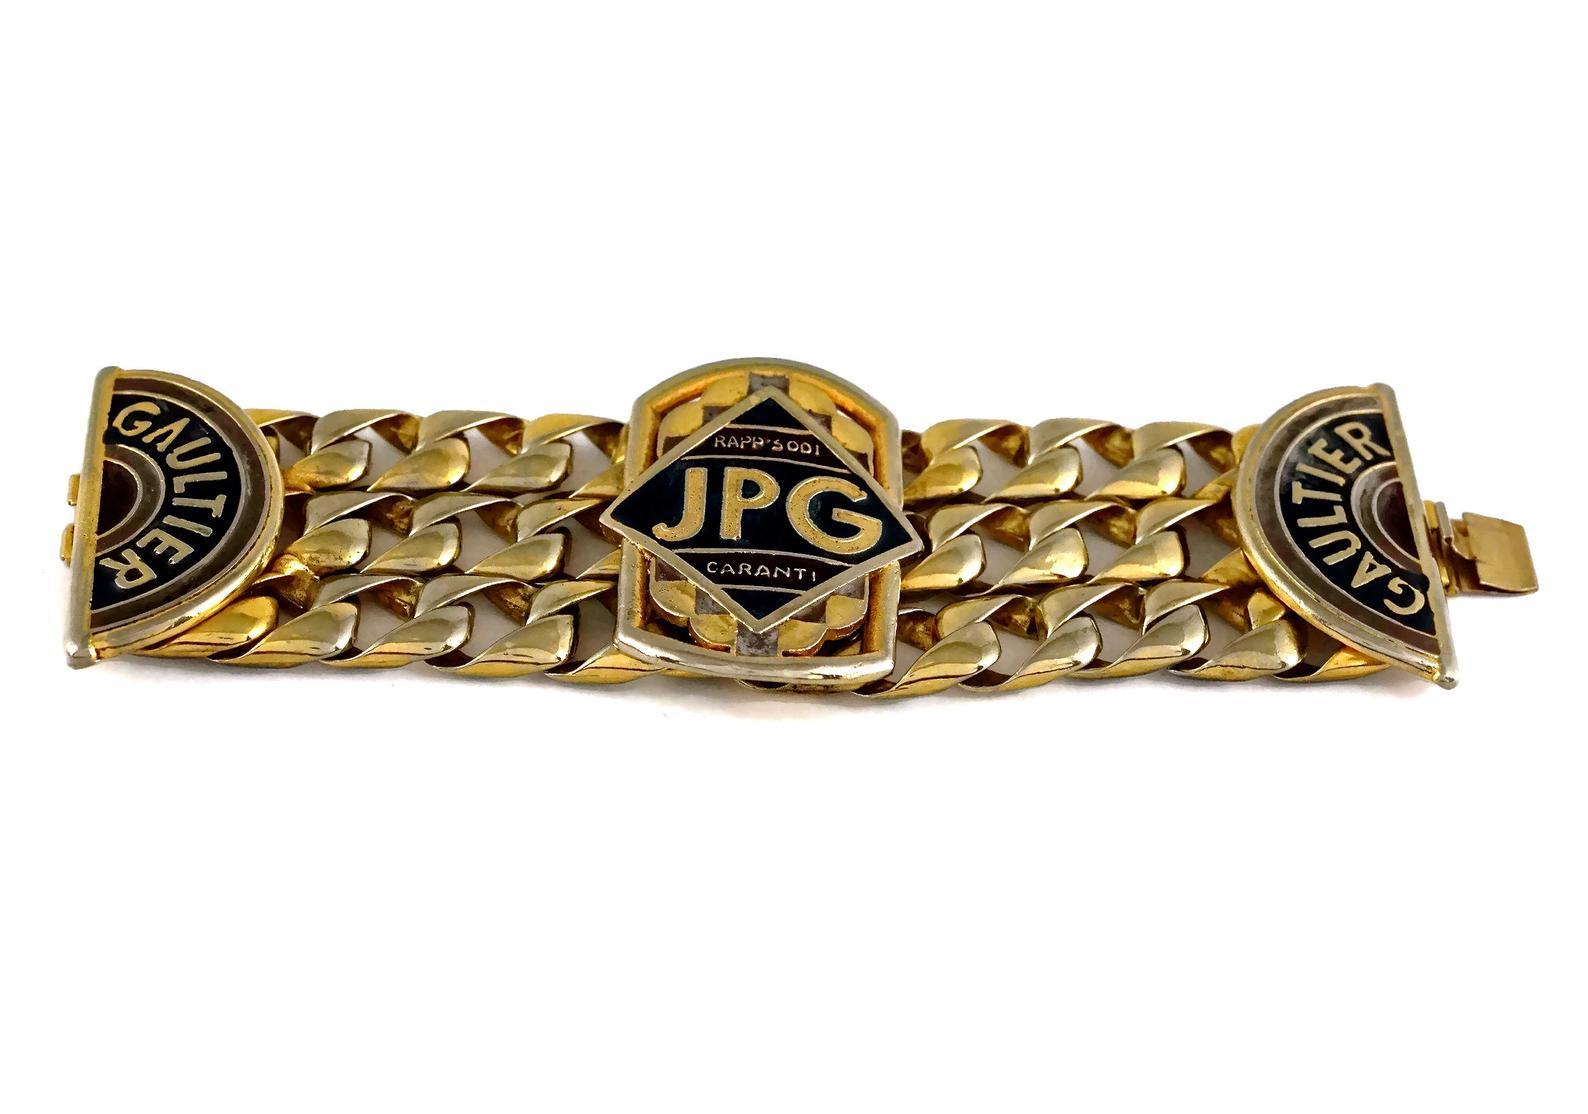 Vintage Jean Paul Gaultier JPG RAPPSODI GARANTI Enamel Chain Cuff Bracelet 1